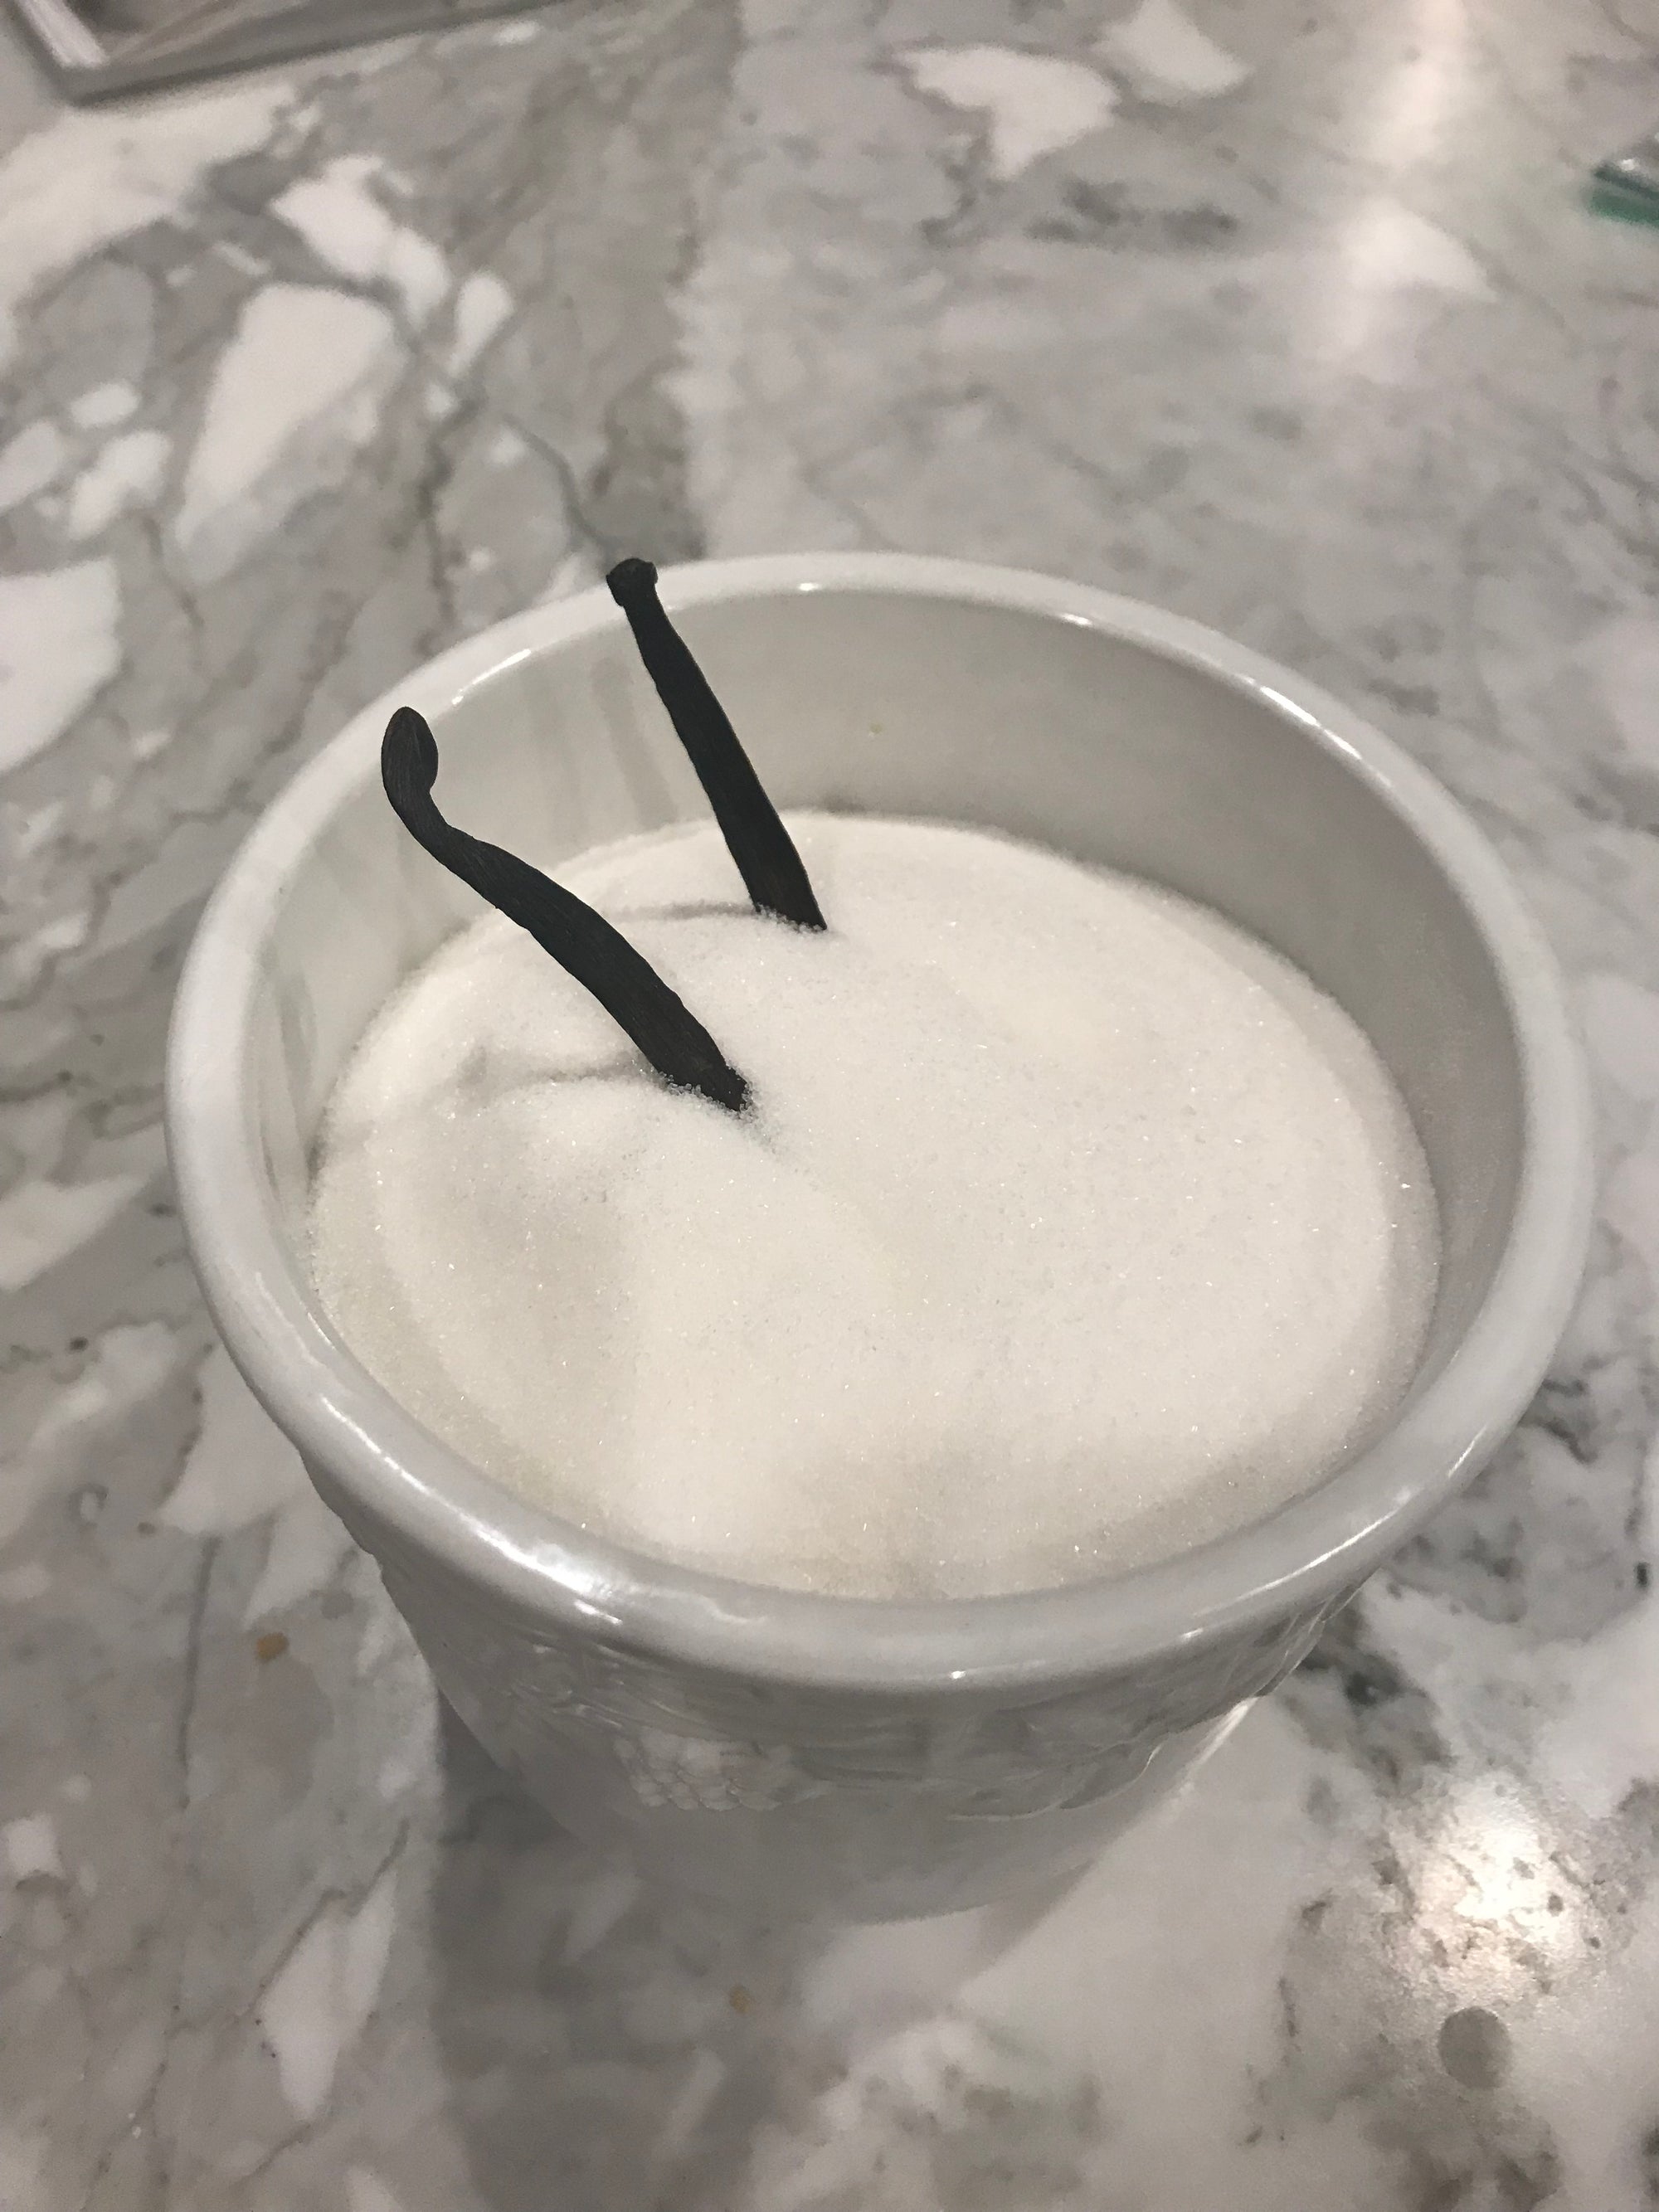 How to make vanilla sugar